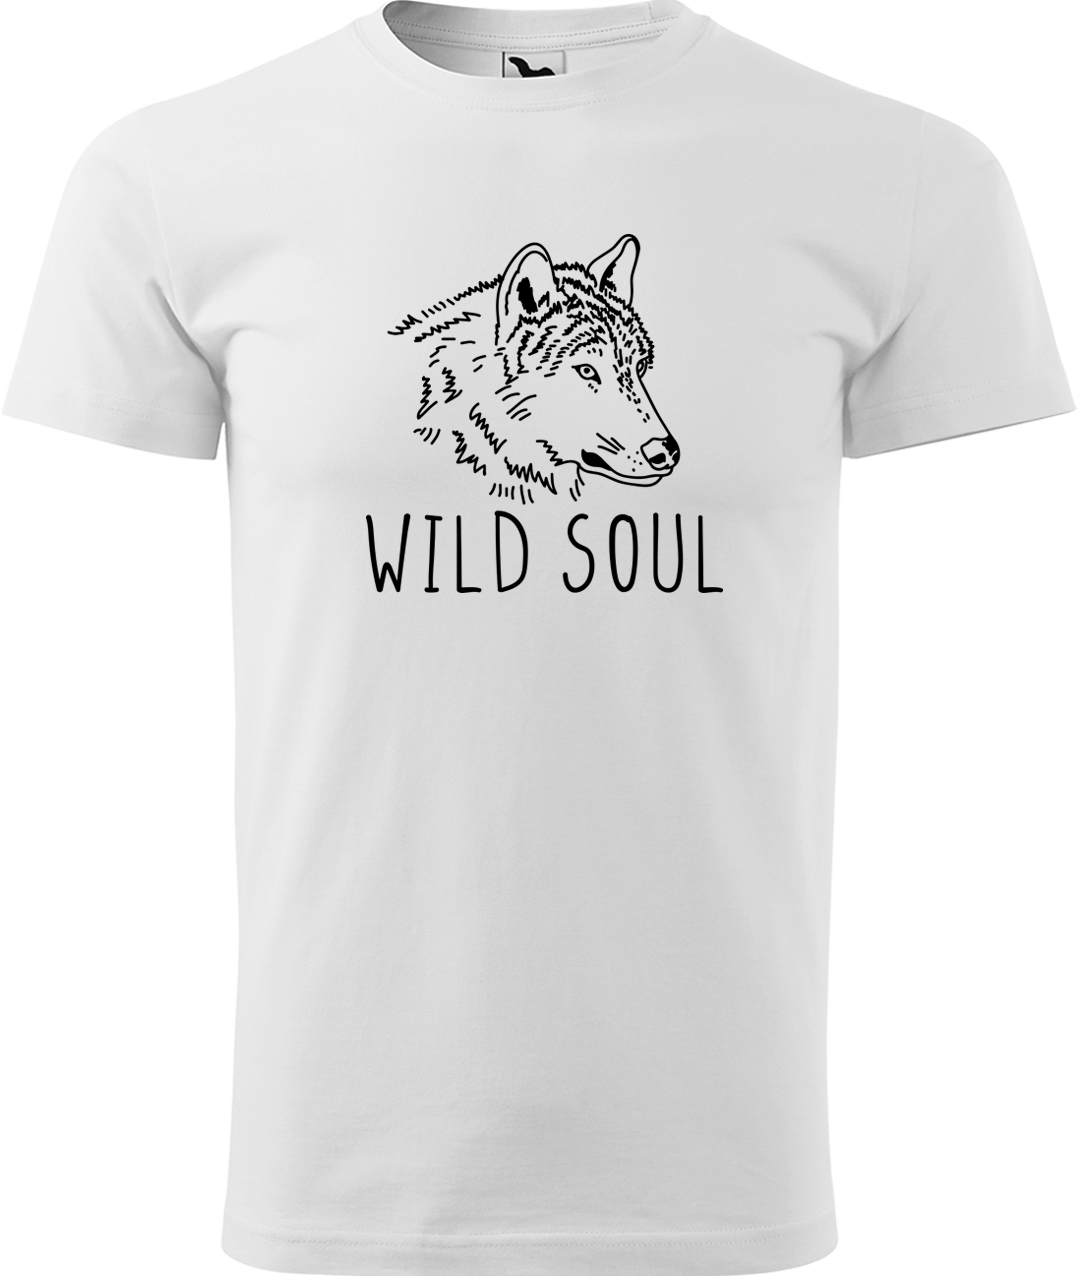 Pánské tričko s vlkem - Wild soul Velikost: XL, Barva: Bílá (00), Střih: pánský